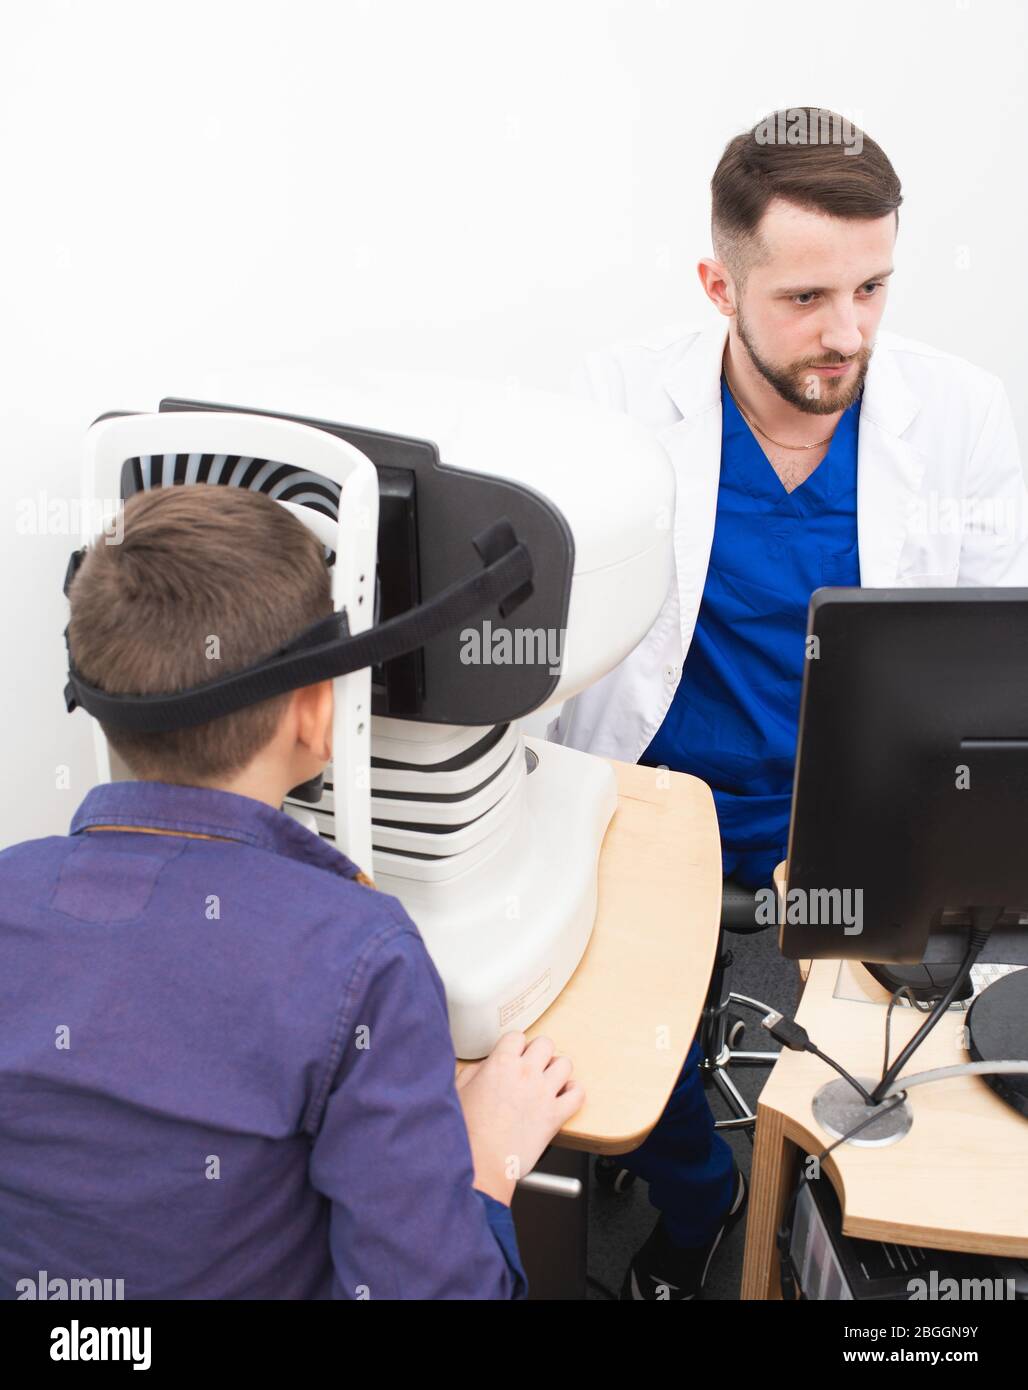 le médecin examine la cornée d'un garçon à l'aide d'un appareil ophtalmique spécial. Traitement du glaucome Banque D'Images